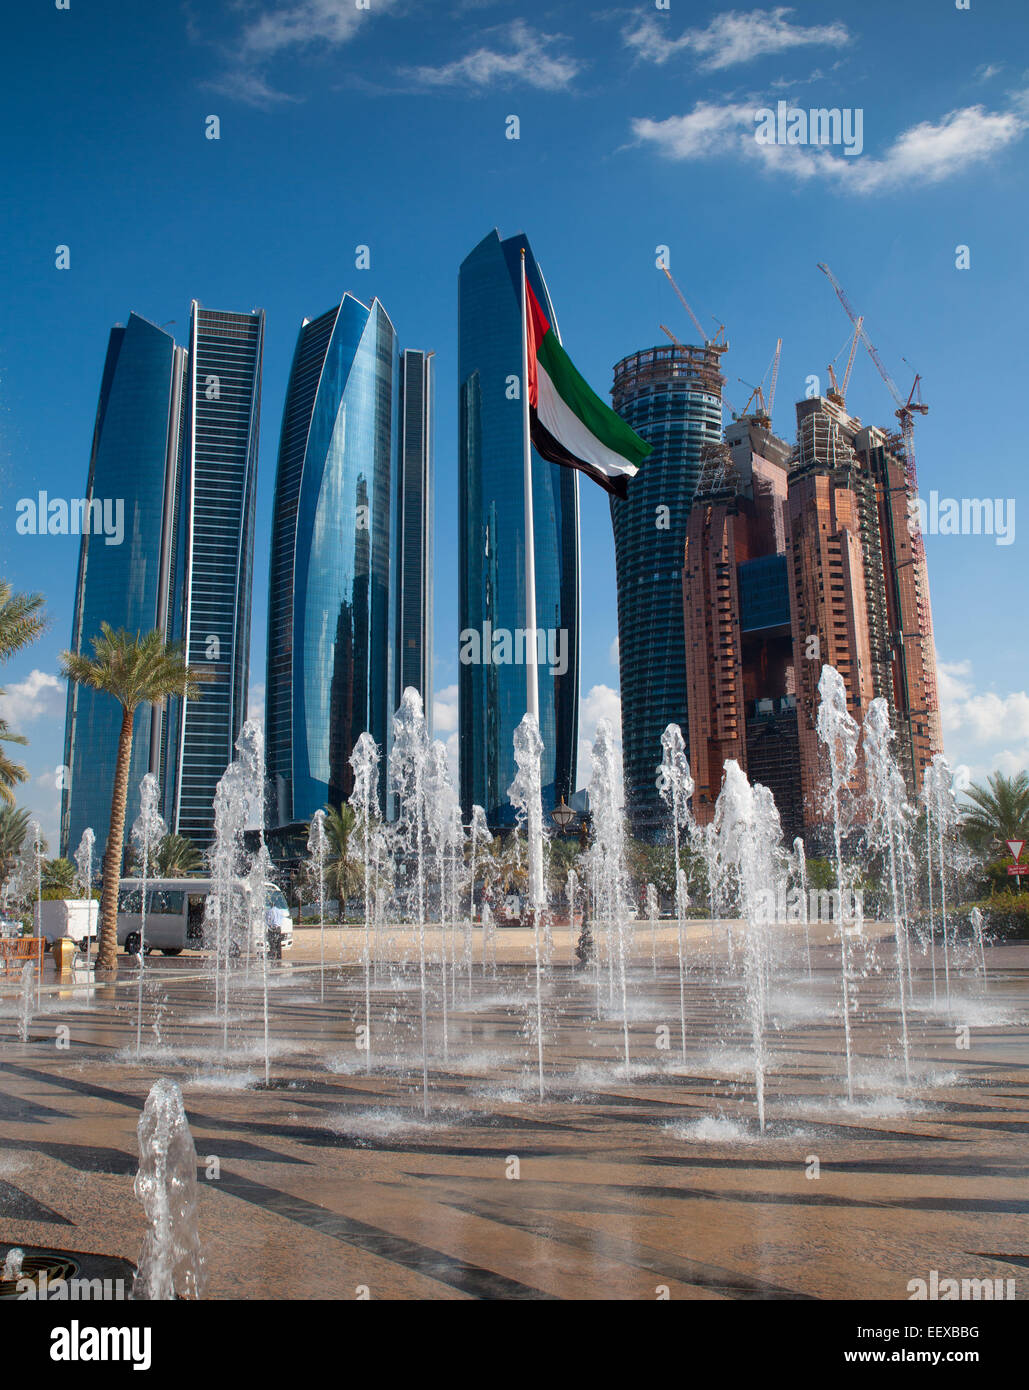 Los rascacielos modernos de Abu Dhabi, capital de los Emiratos Árabes Unidos. Las fuentes y los EAU bandera en primer plano. Ciudad a fondo. Foto de stock